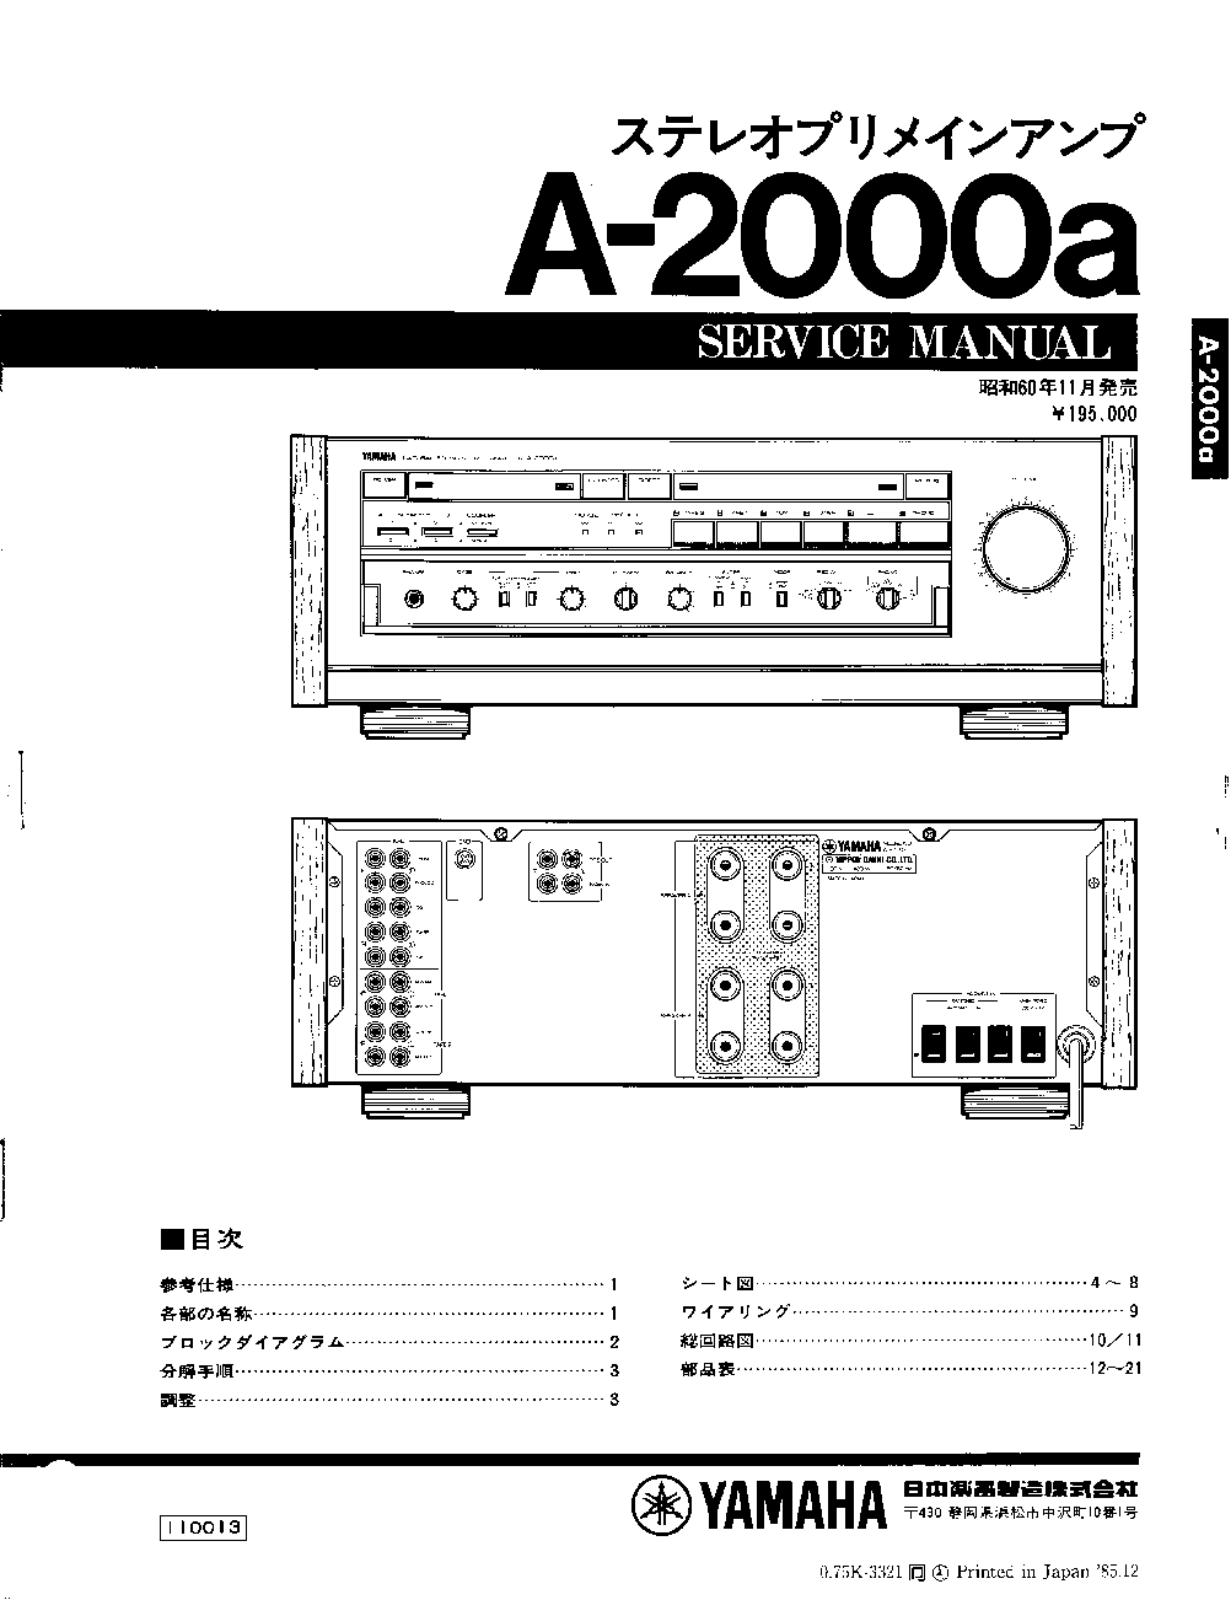 Yamaha A-2000a Service manual